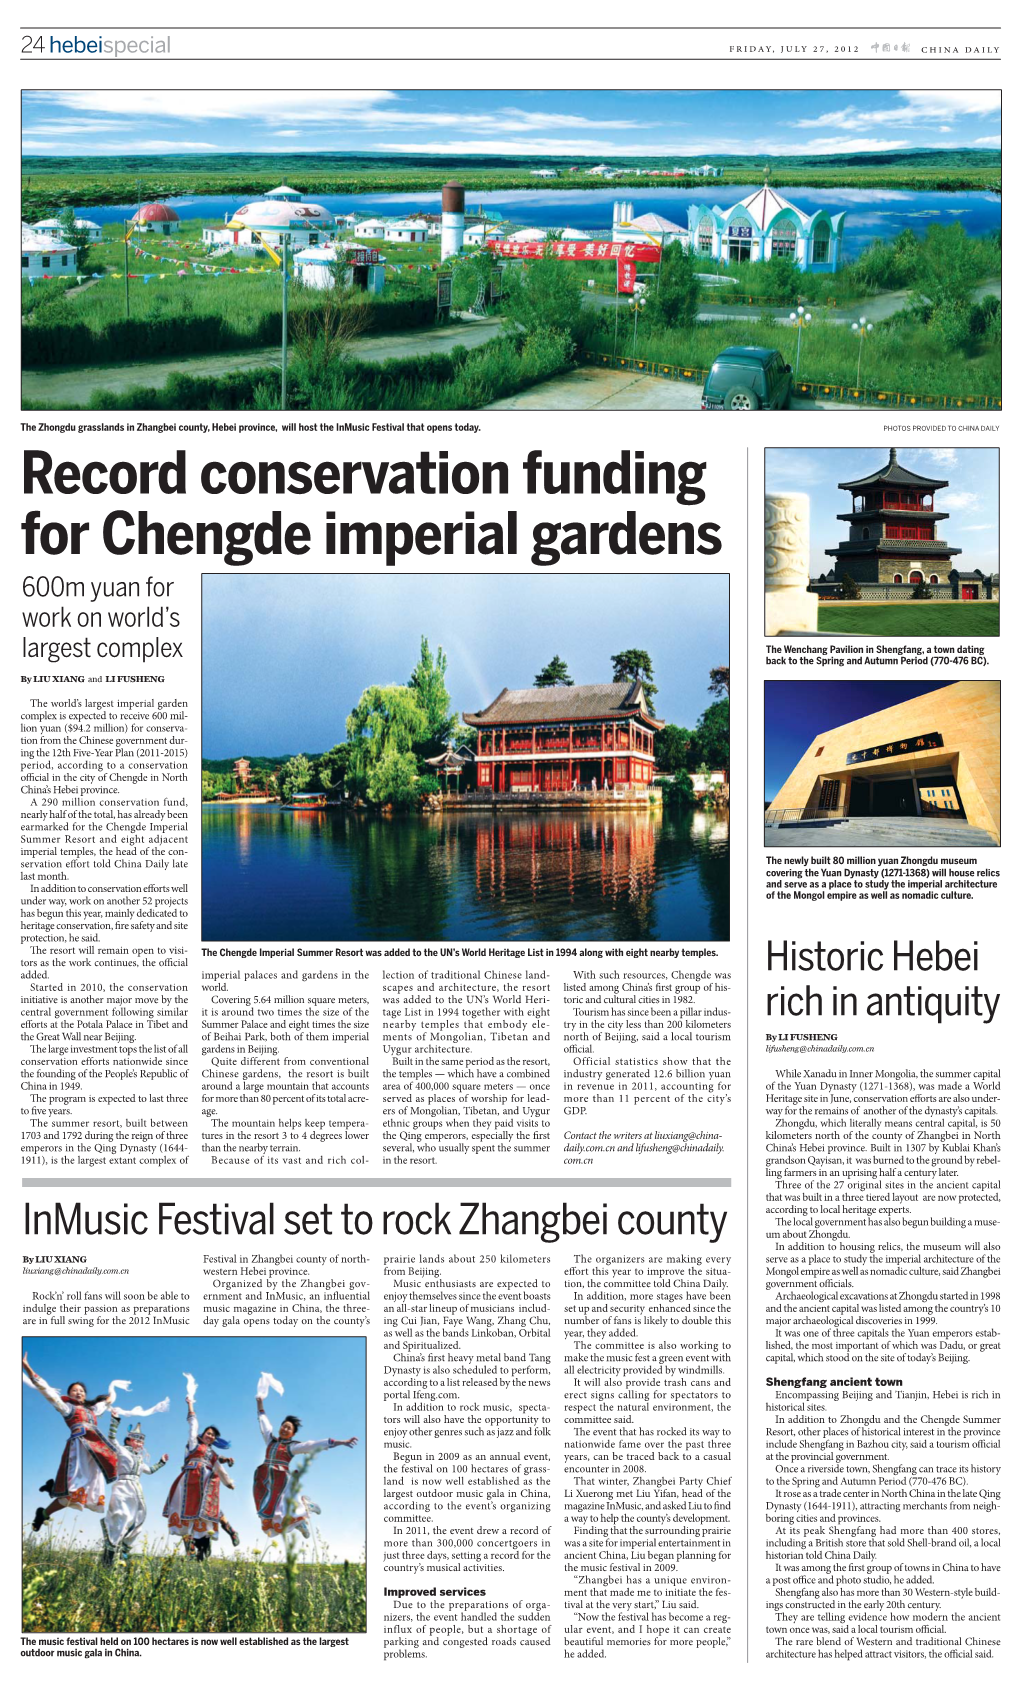 China Daily 0727 B12.Indd